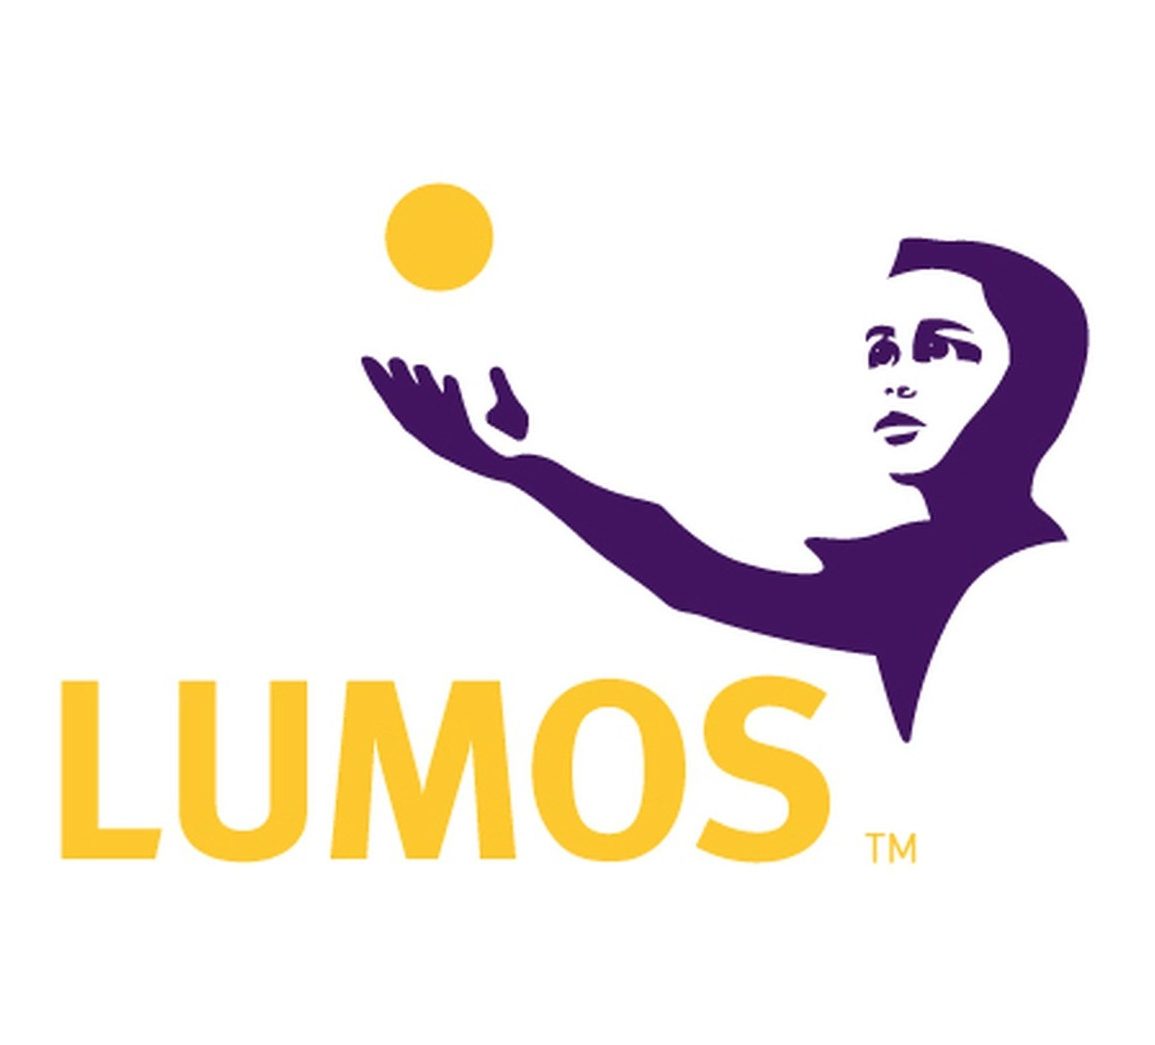 Lumos's logo